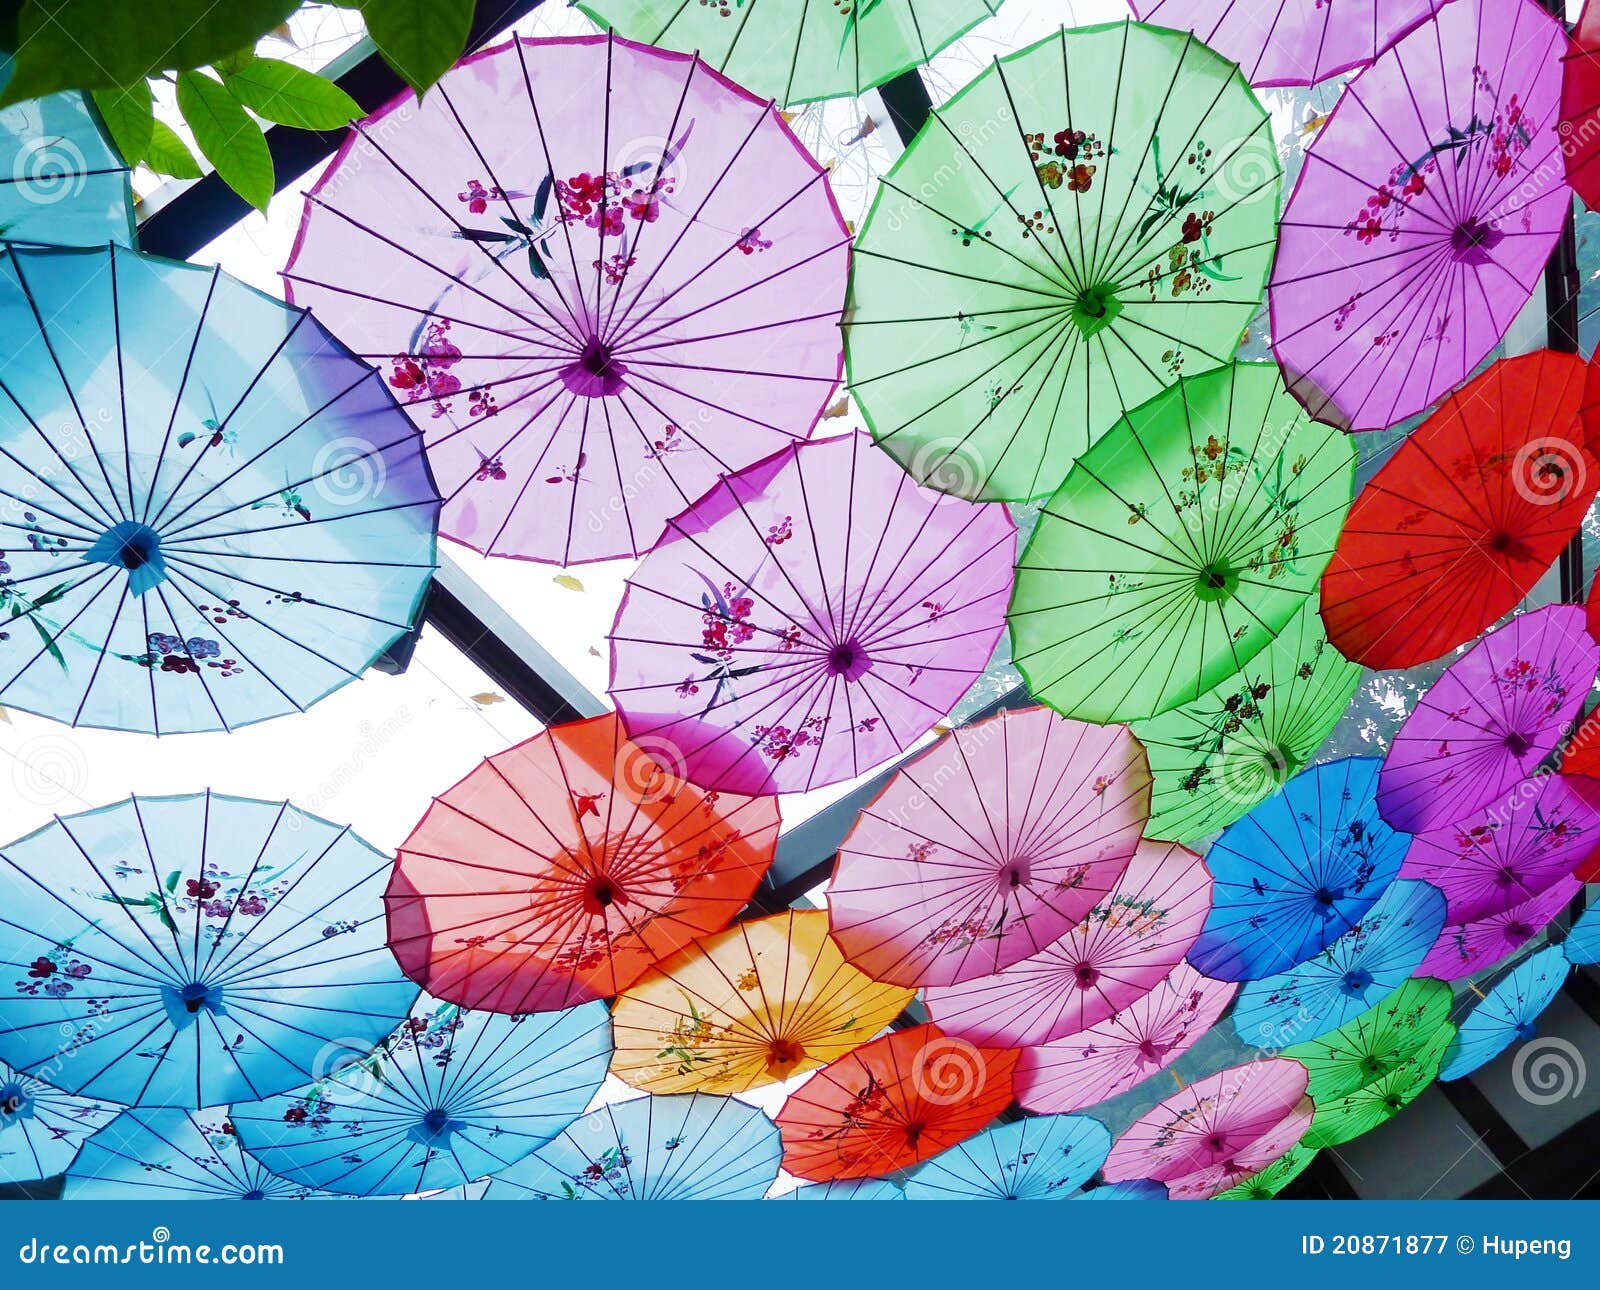 цветастый зонтик